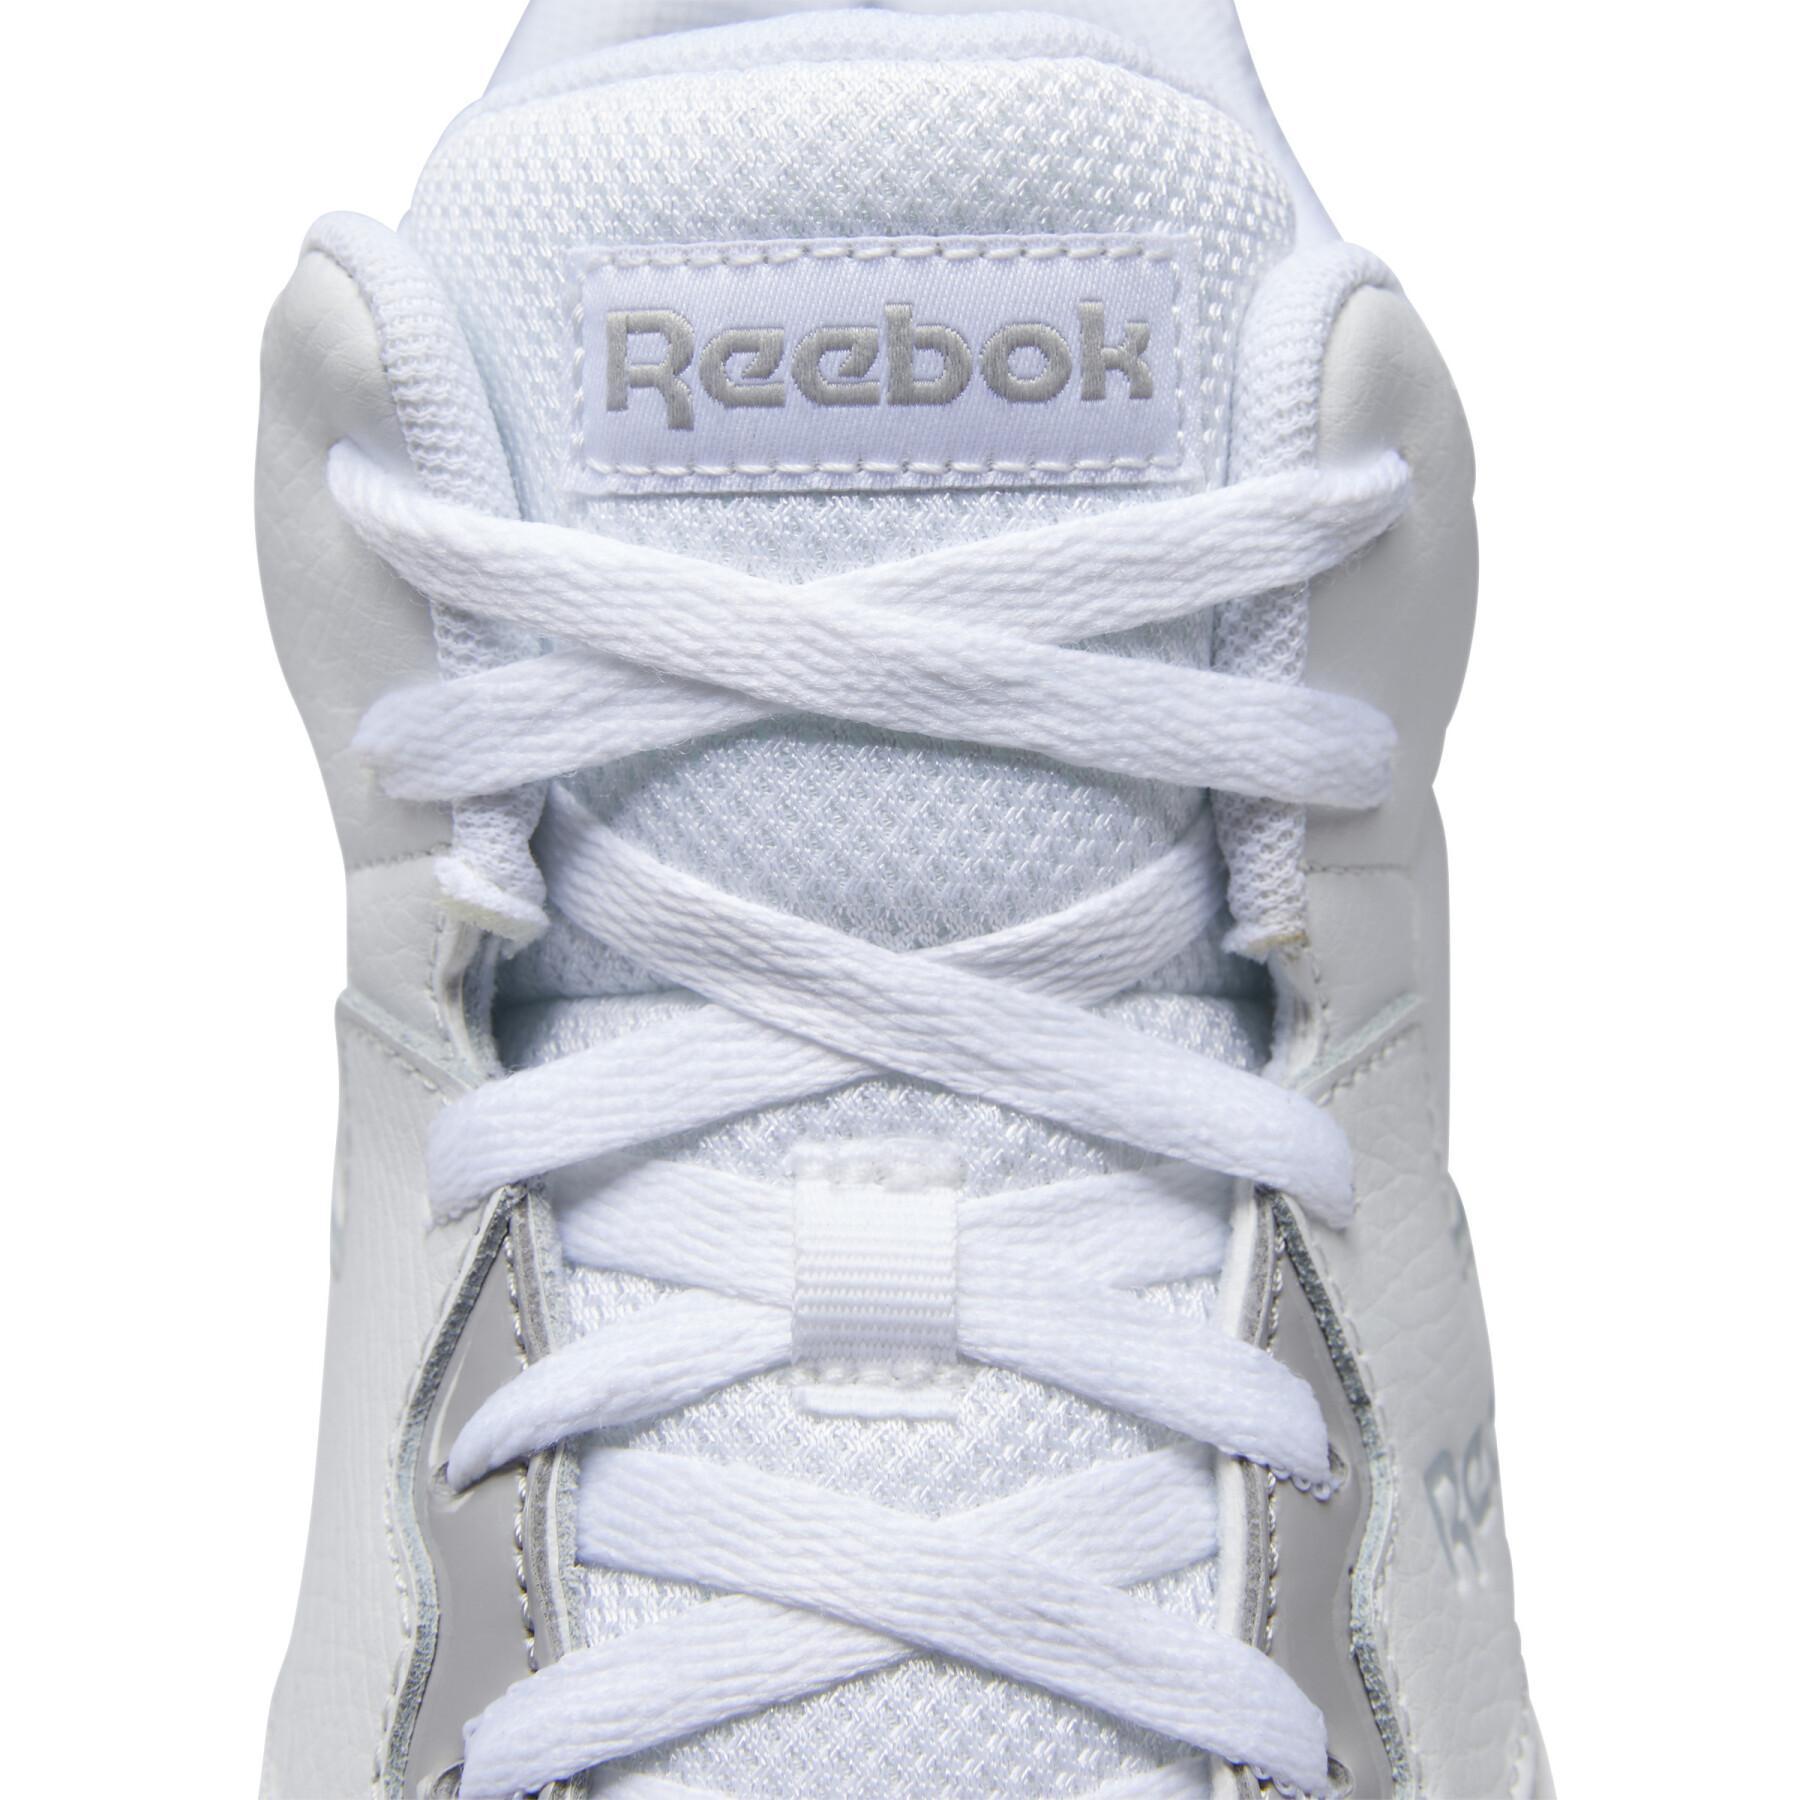 Shoes Reebok Classics Royal BB4500 HI2